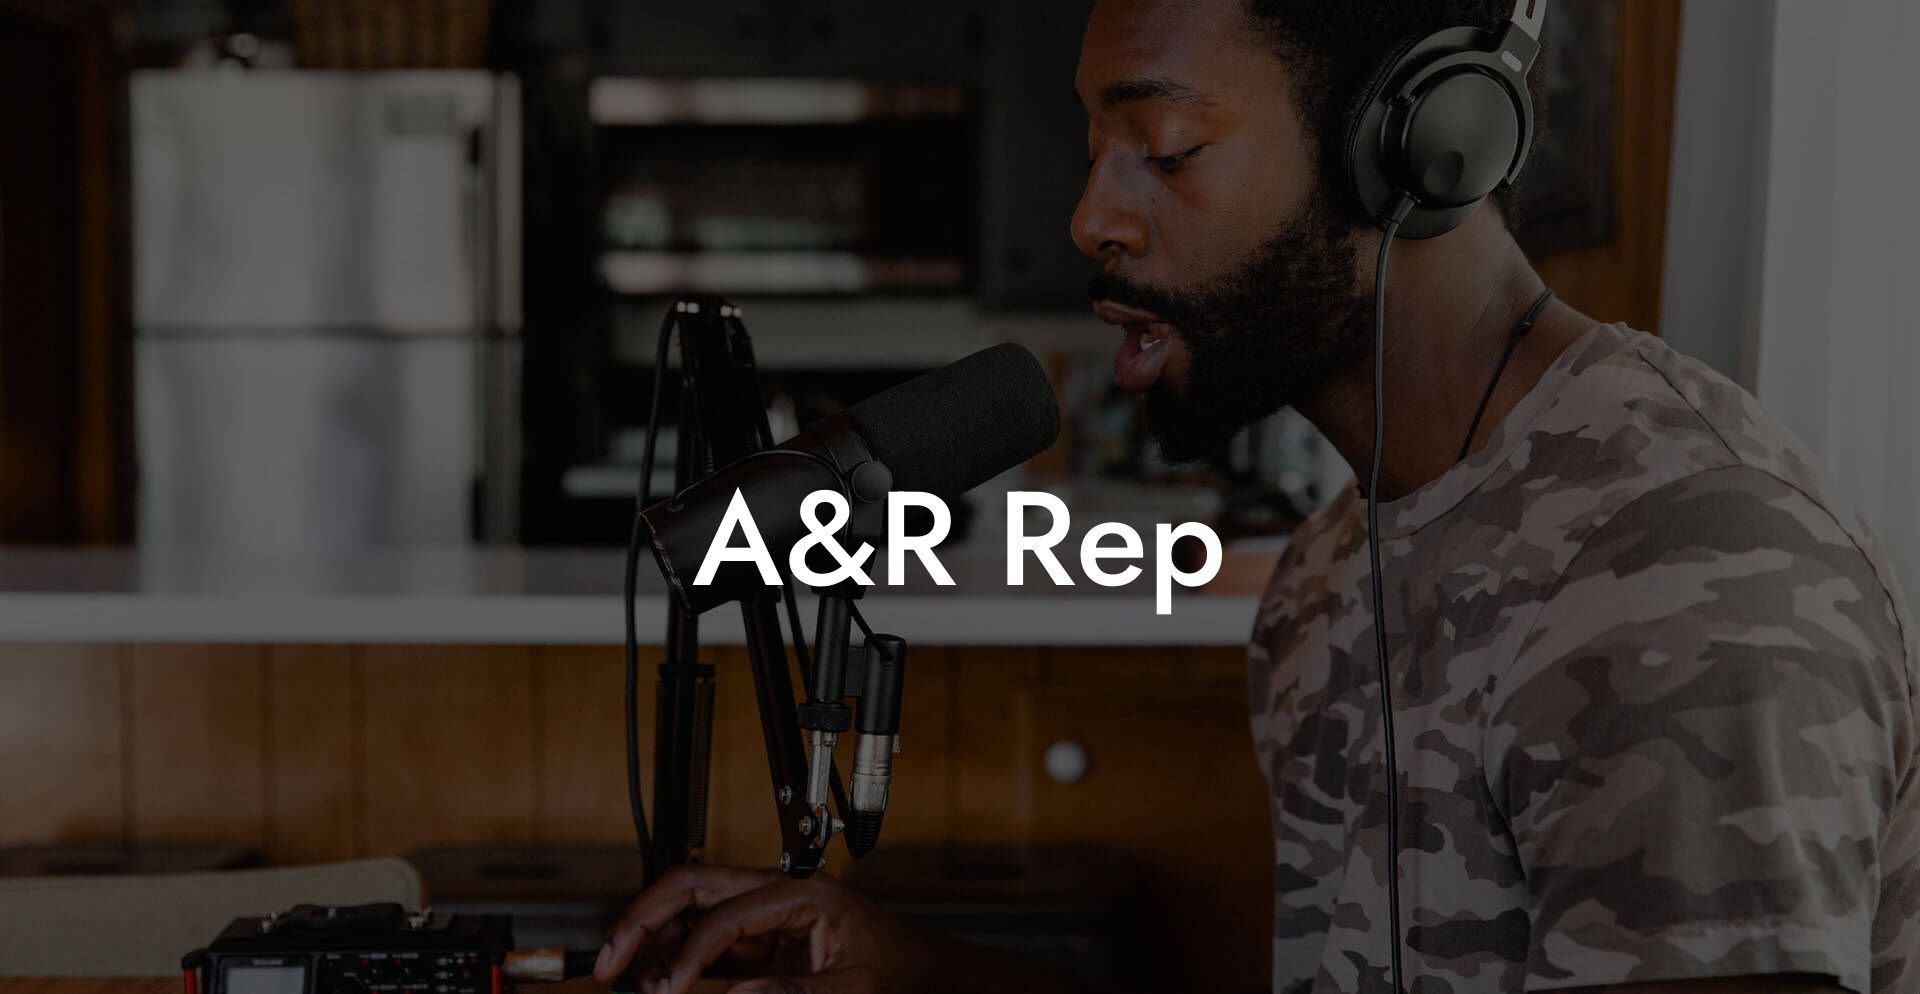 A&R Rep